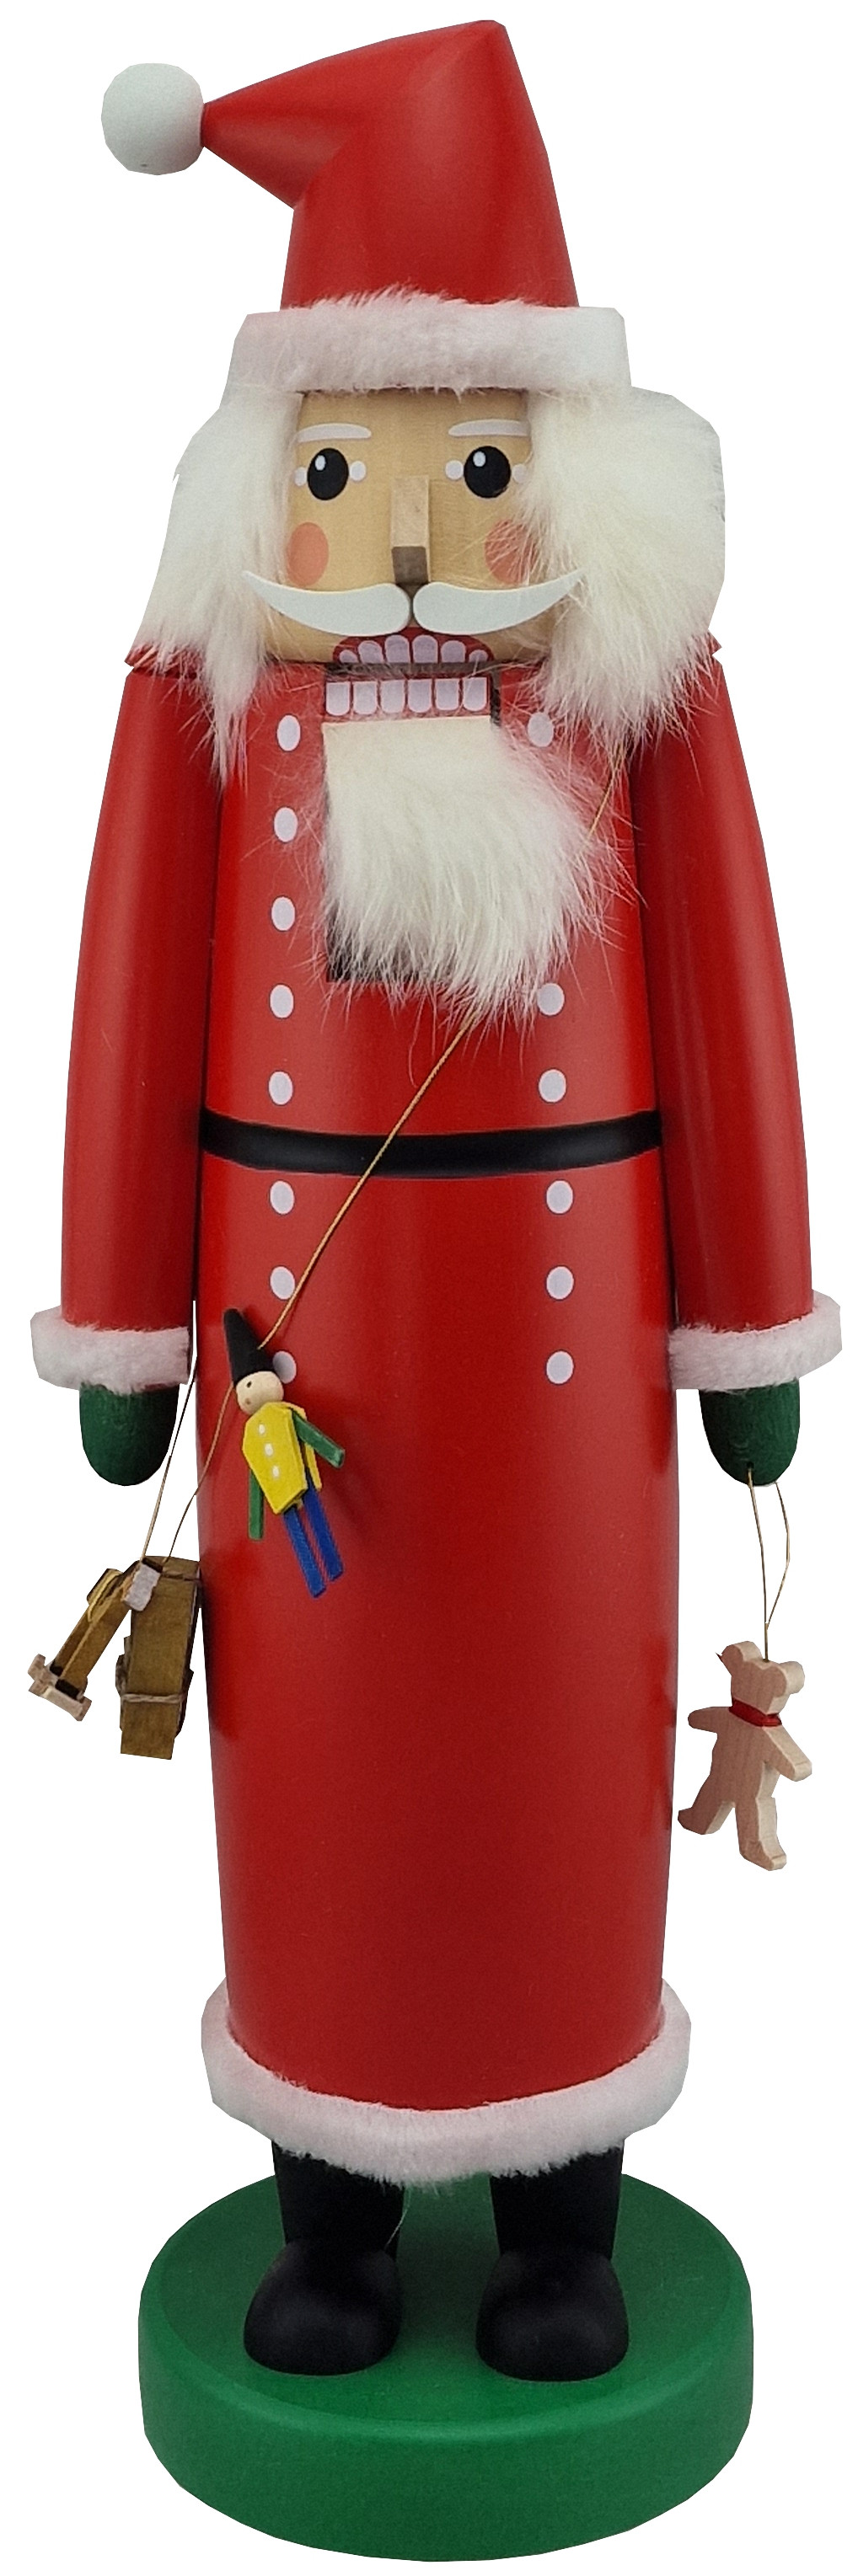 Richard Glässer Nussknacker Weihnachtsmann, 45 cm